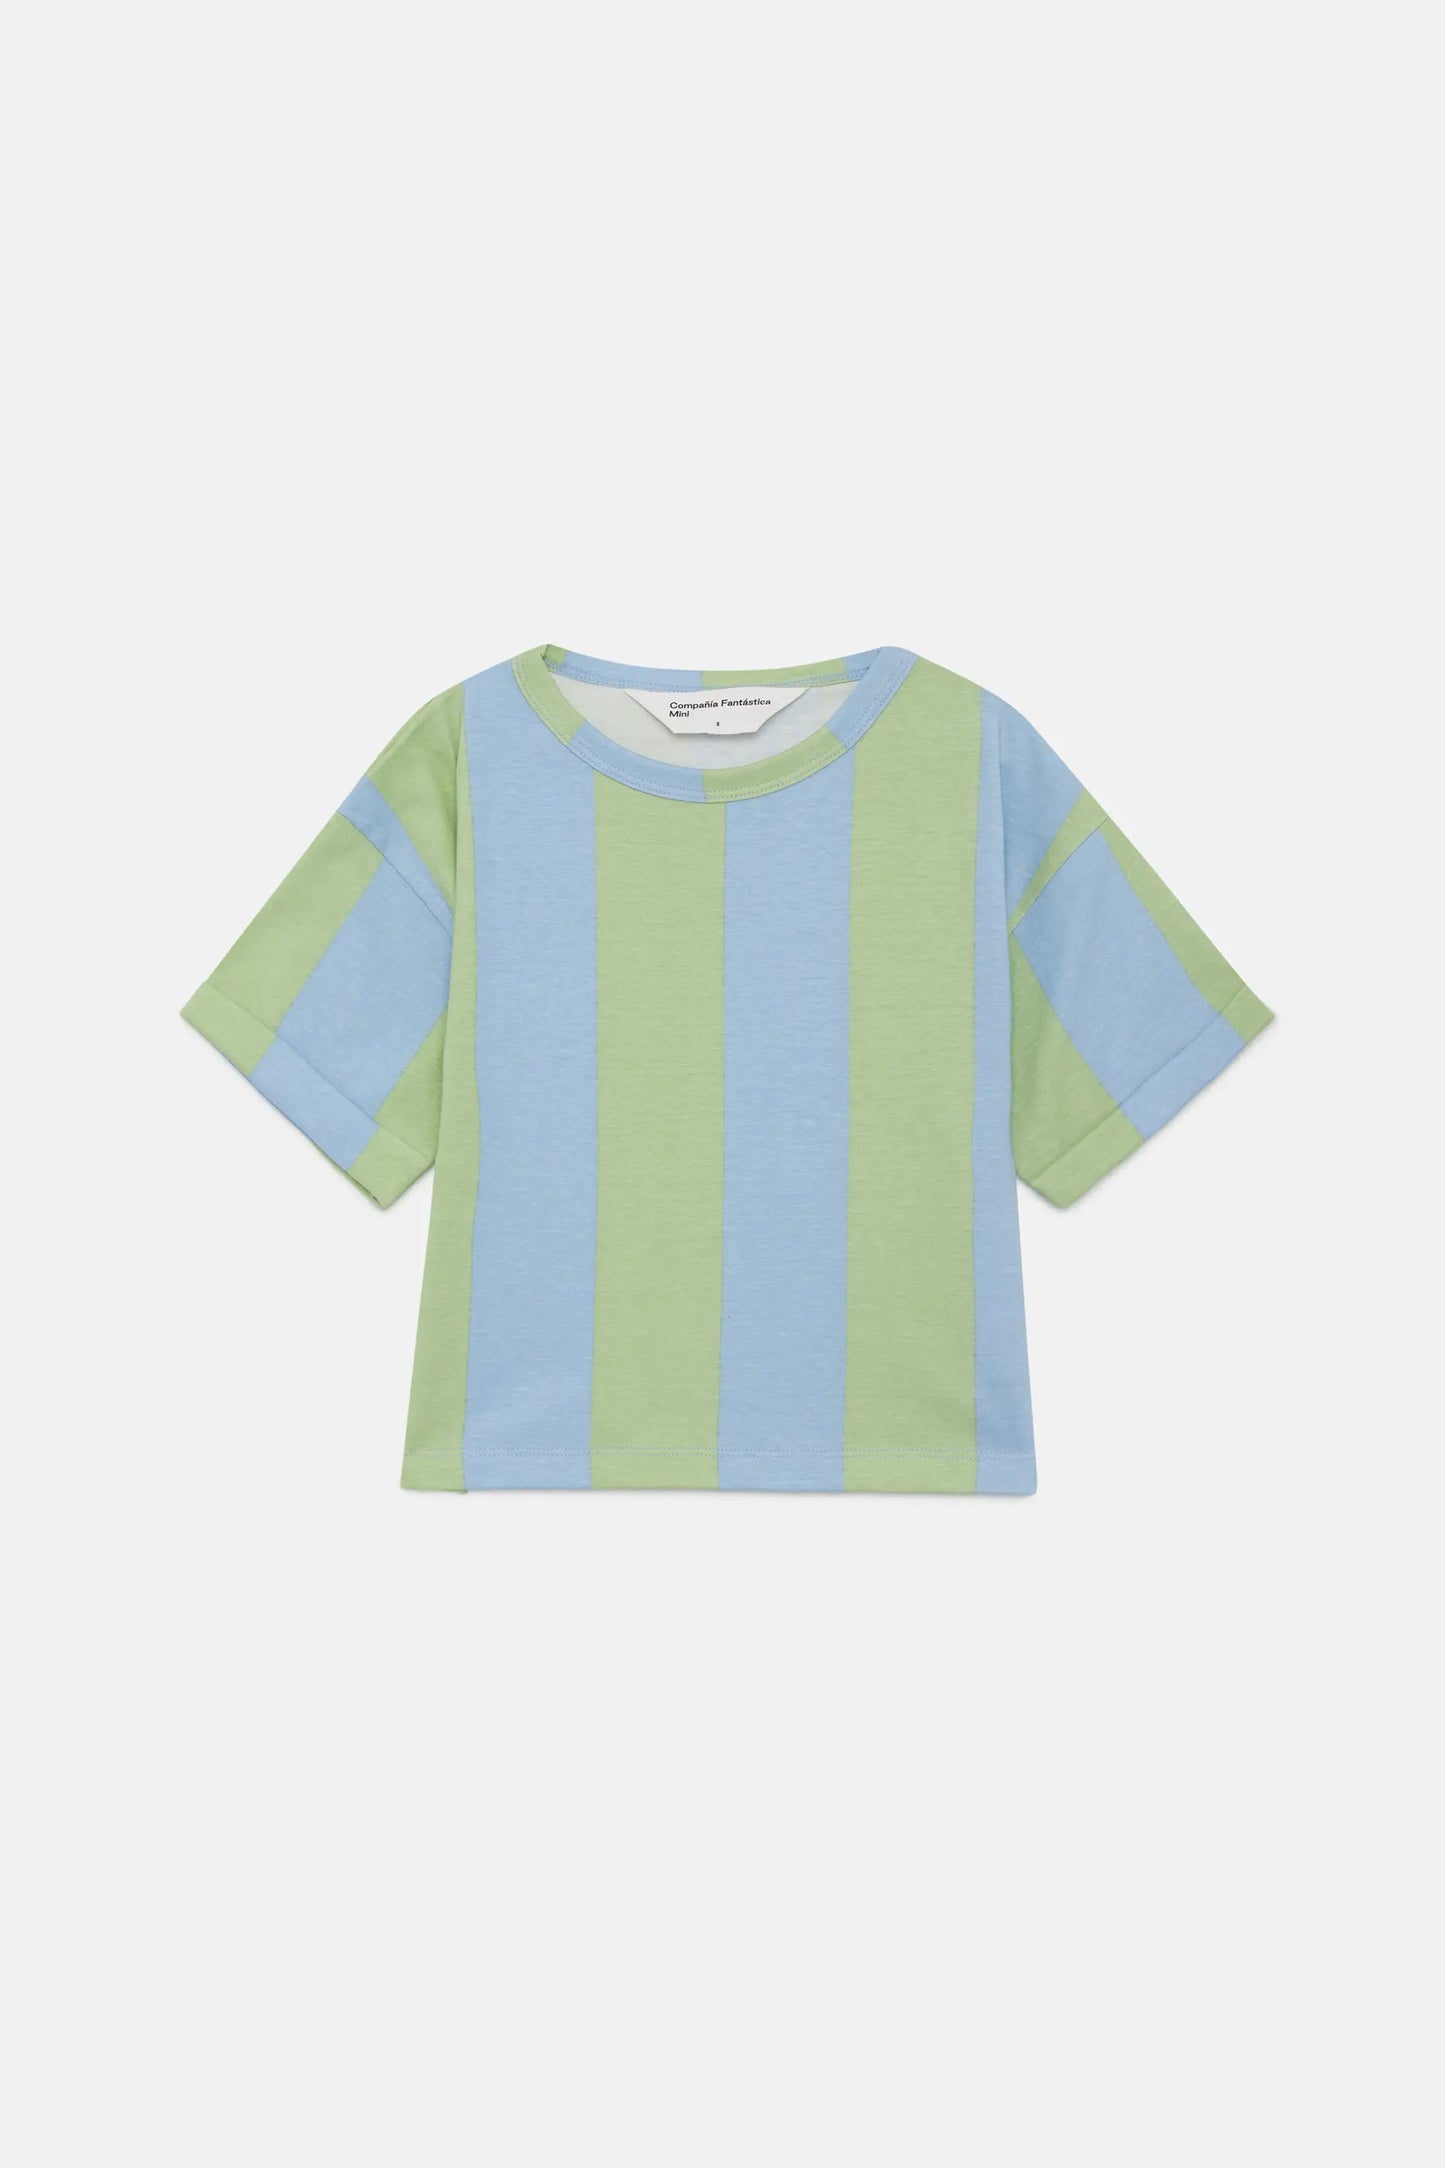 Camiseta unisex de rayas verde y azul